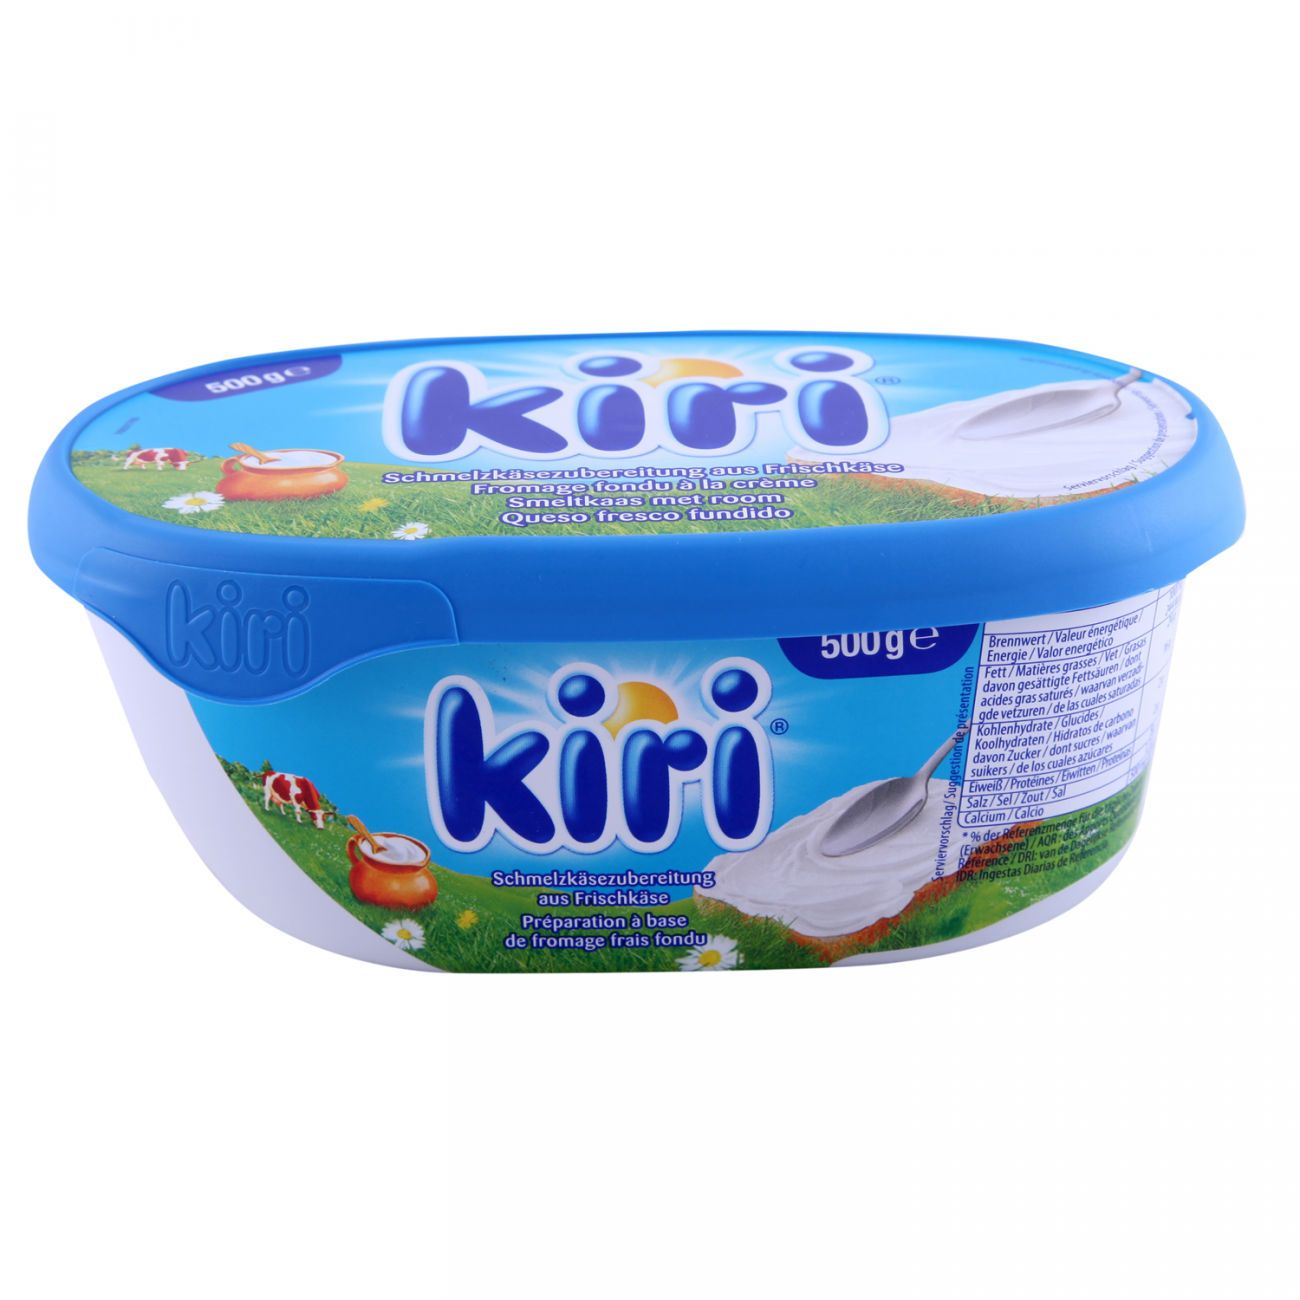 Kiri Spread Cheese (500G) - Aytac Foods